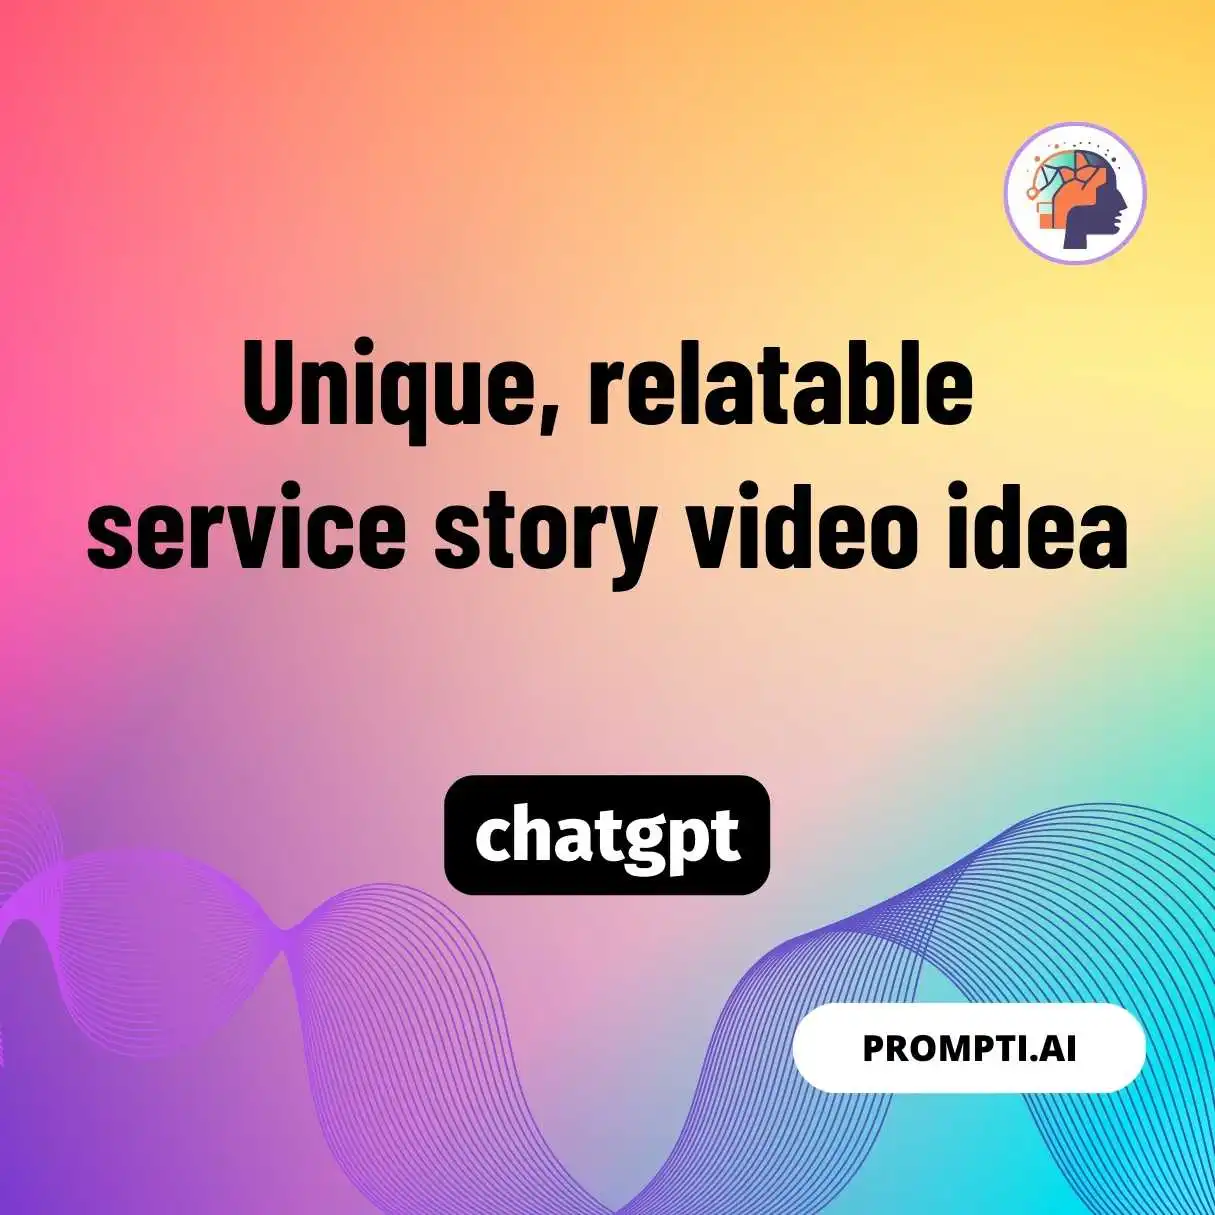 Unique, relatable service story video idea